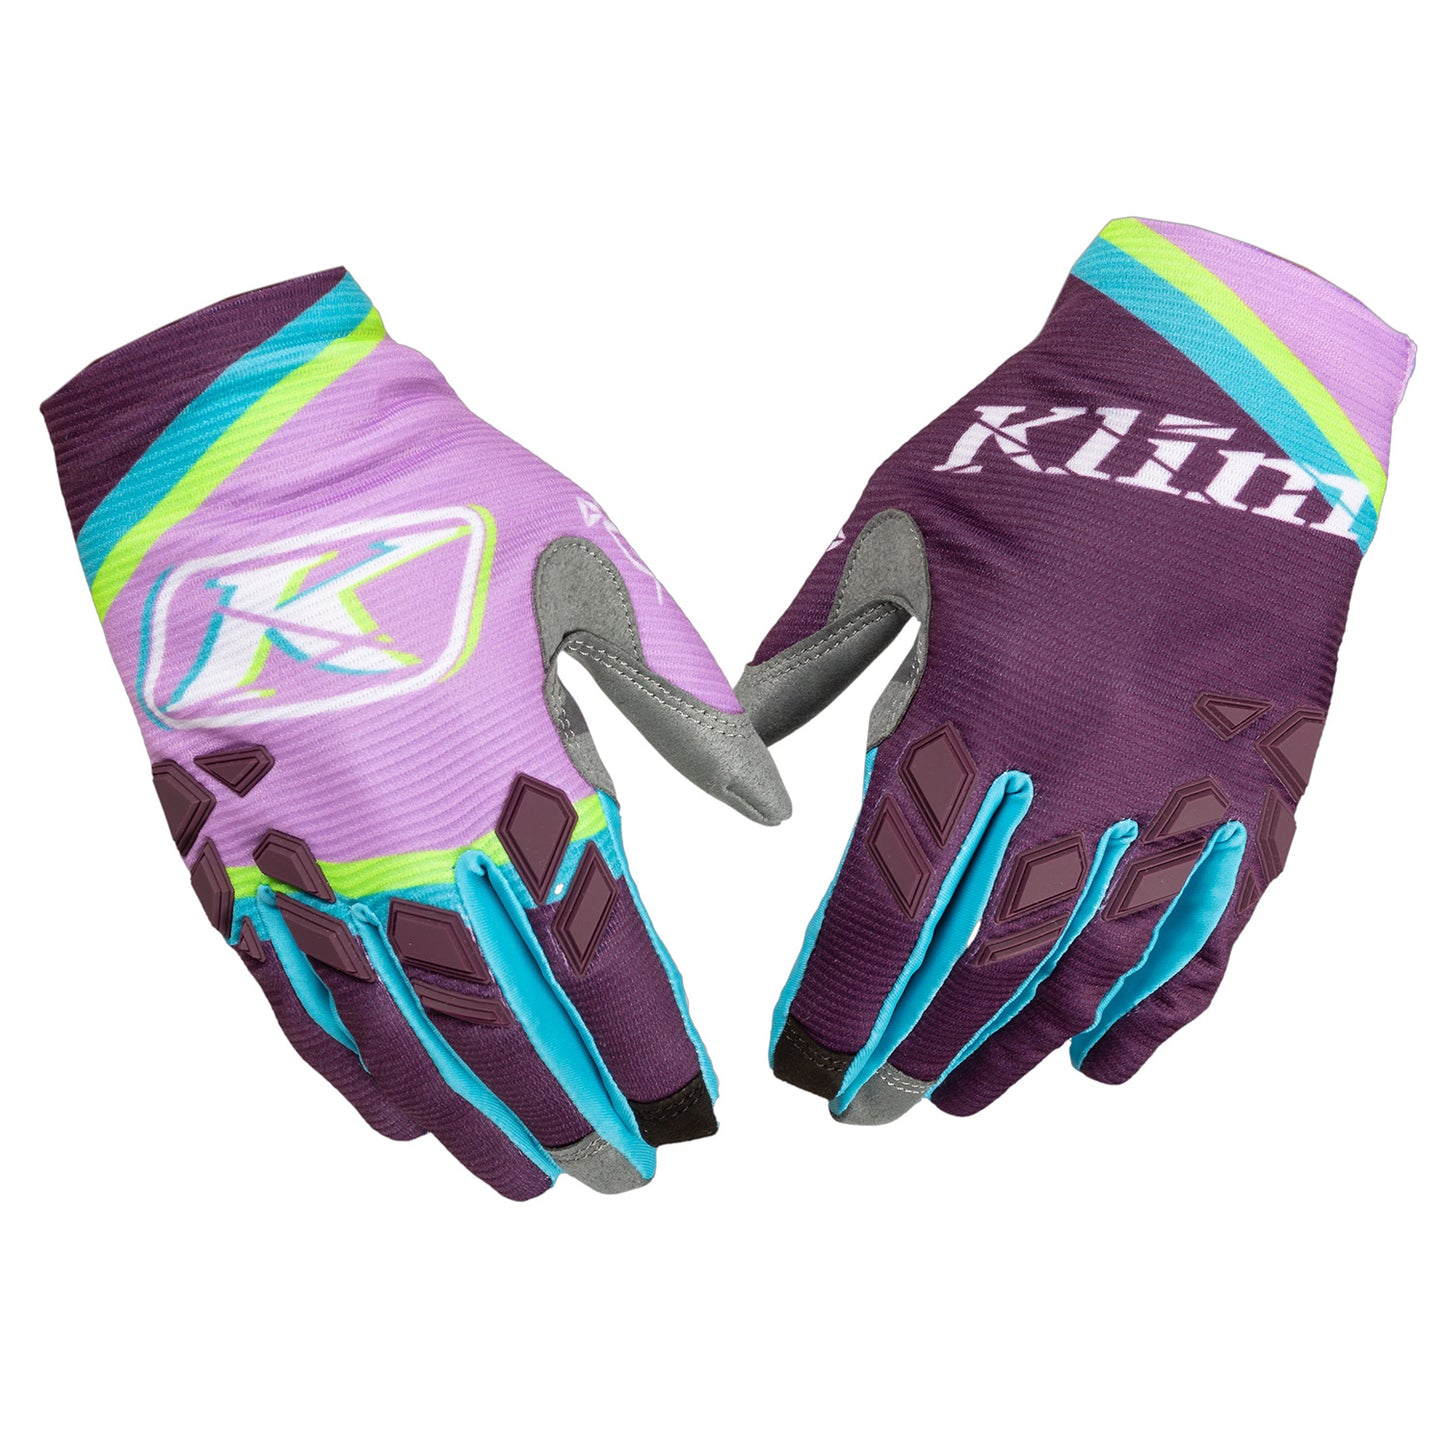 Women's XC Lite Glove